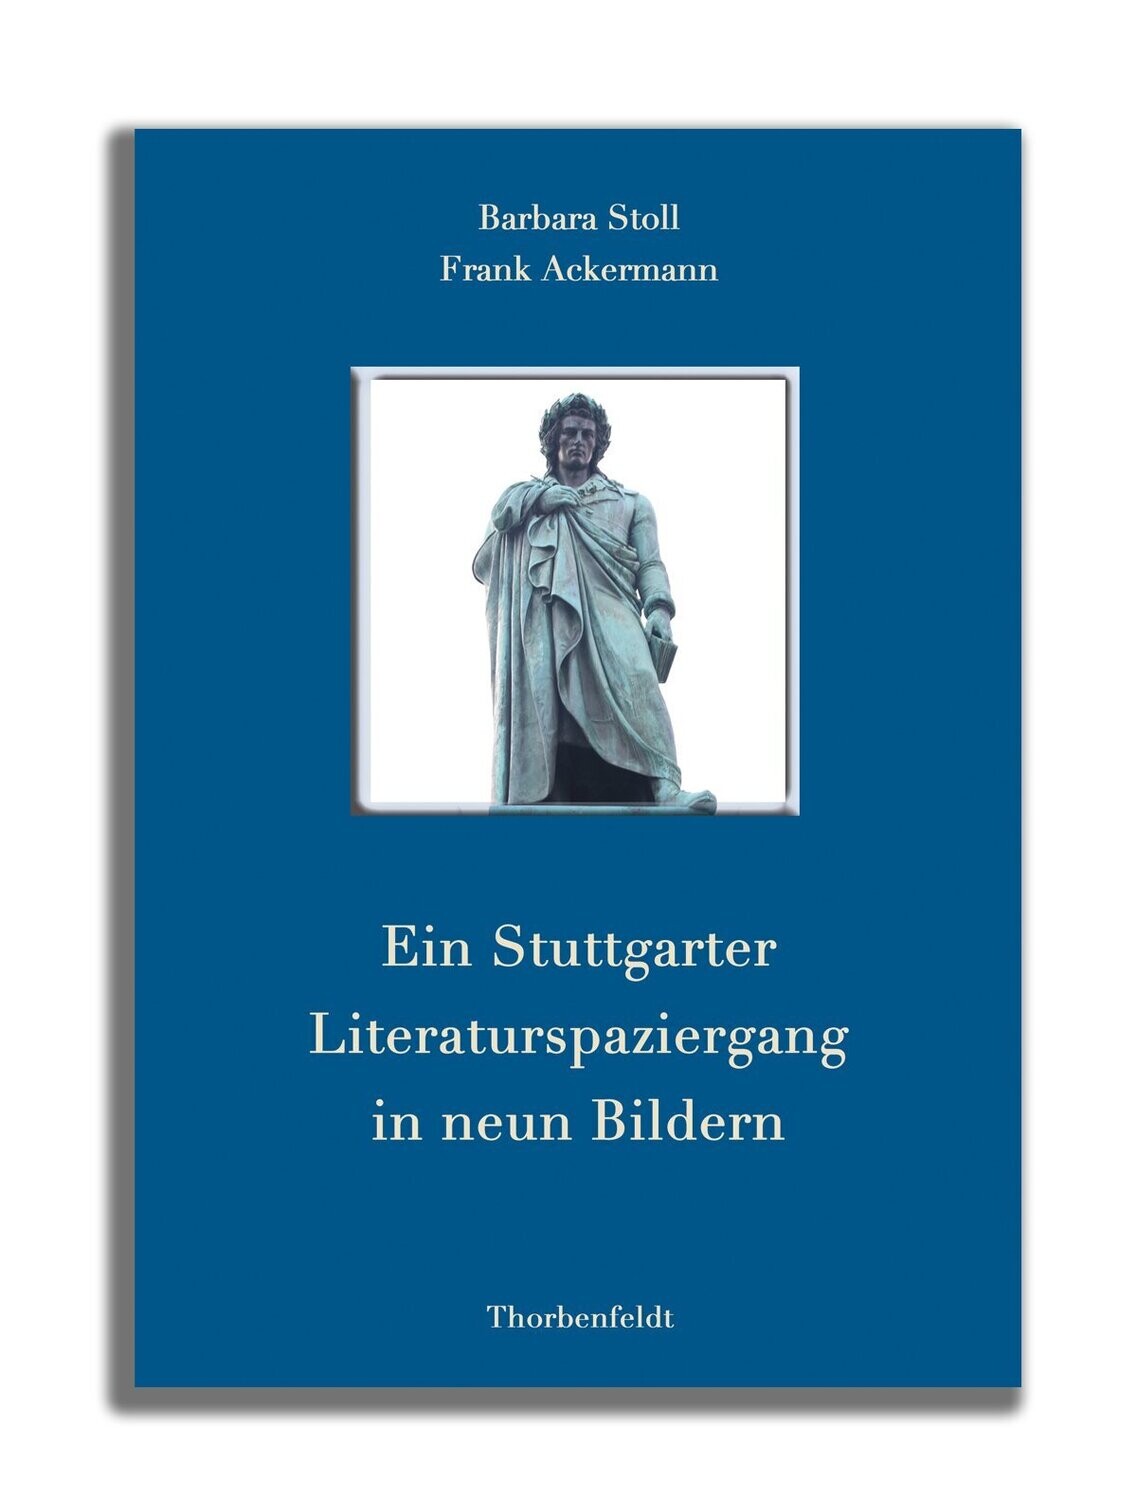 Ein Stuttgarter Literaturspaziergang in neun Bildern